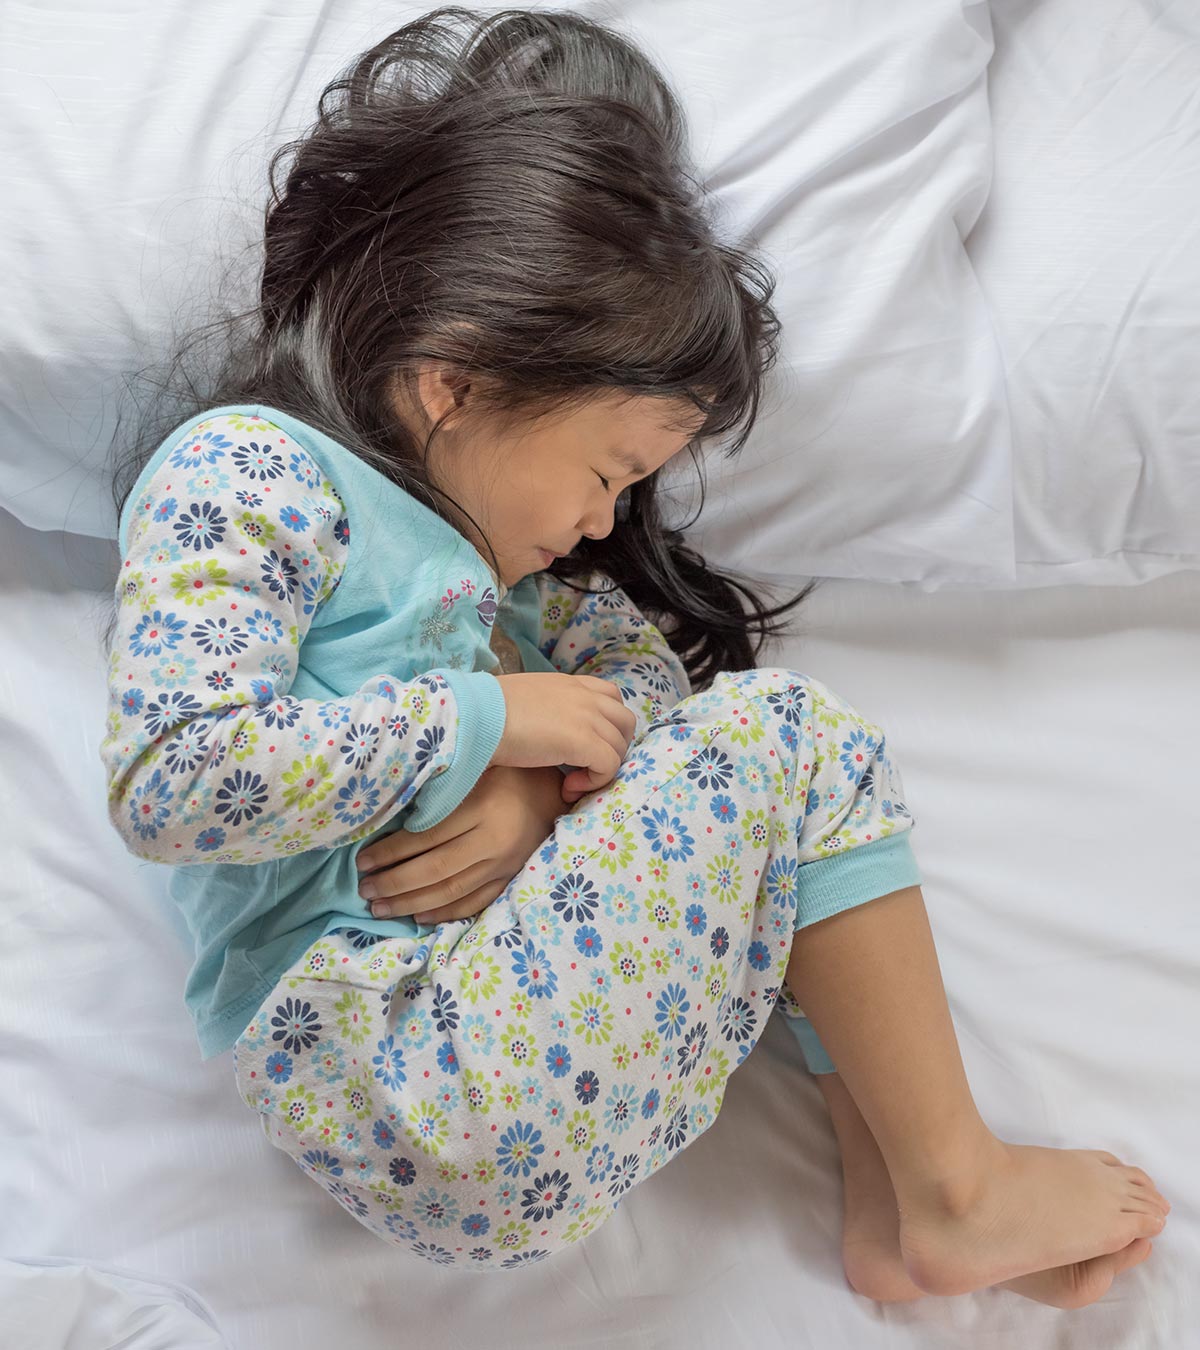 儿童蠕虫感染:症状、治疗和补救